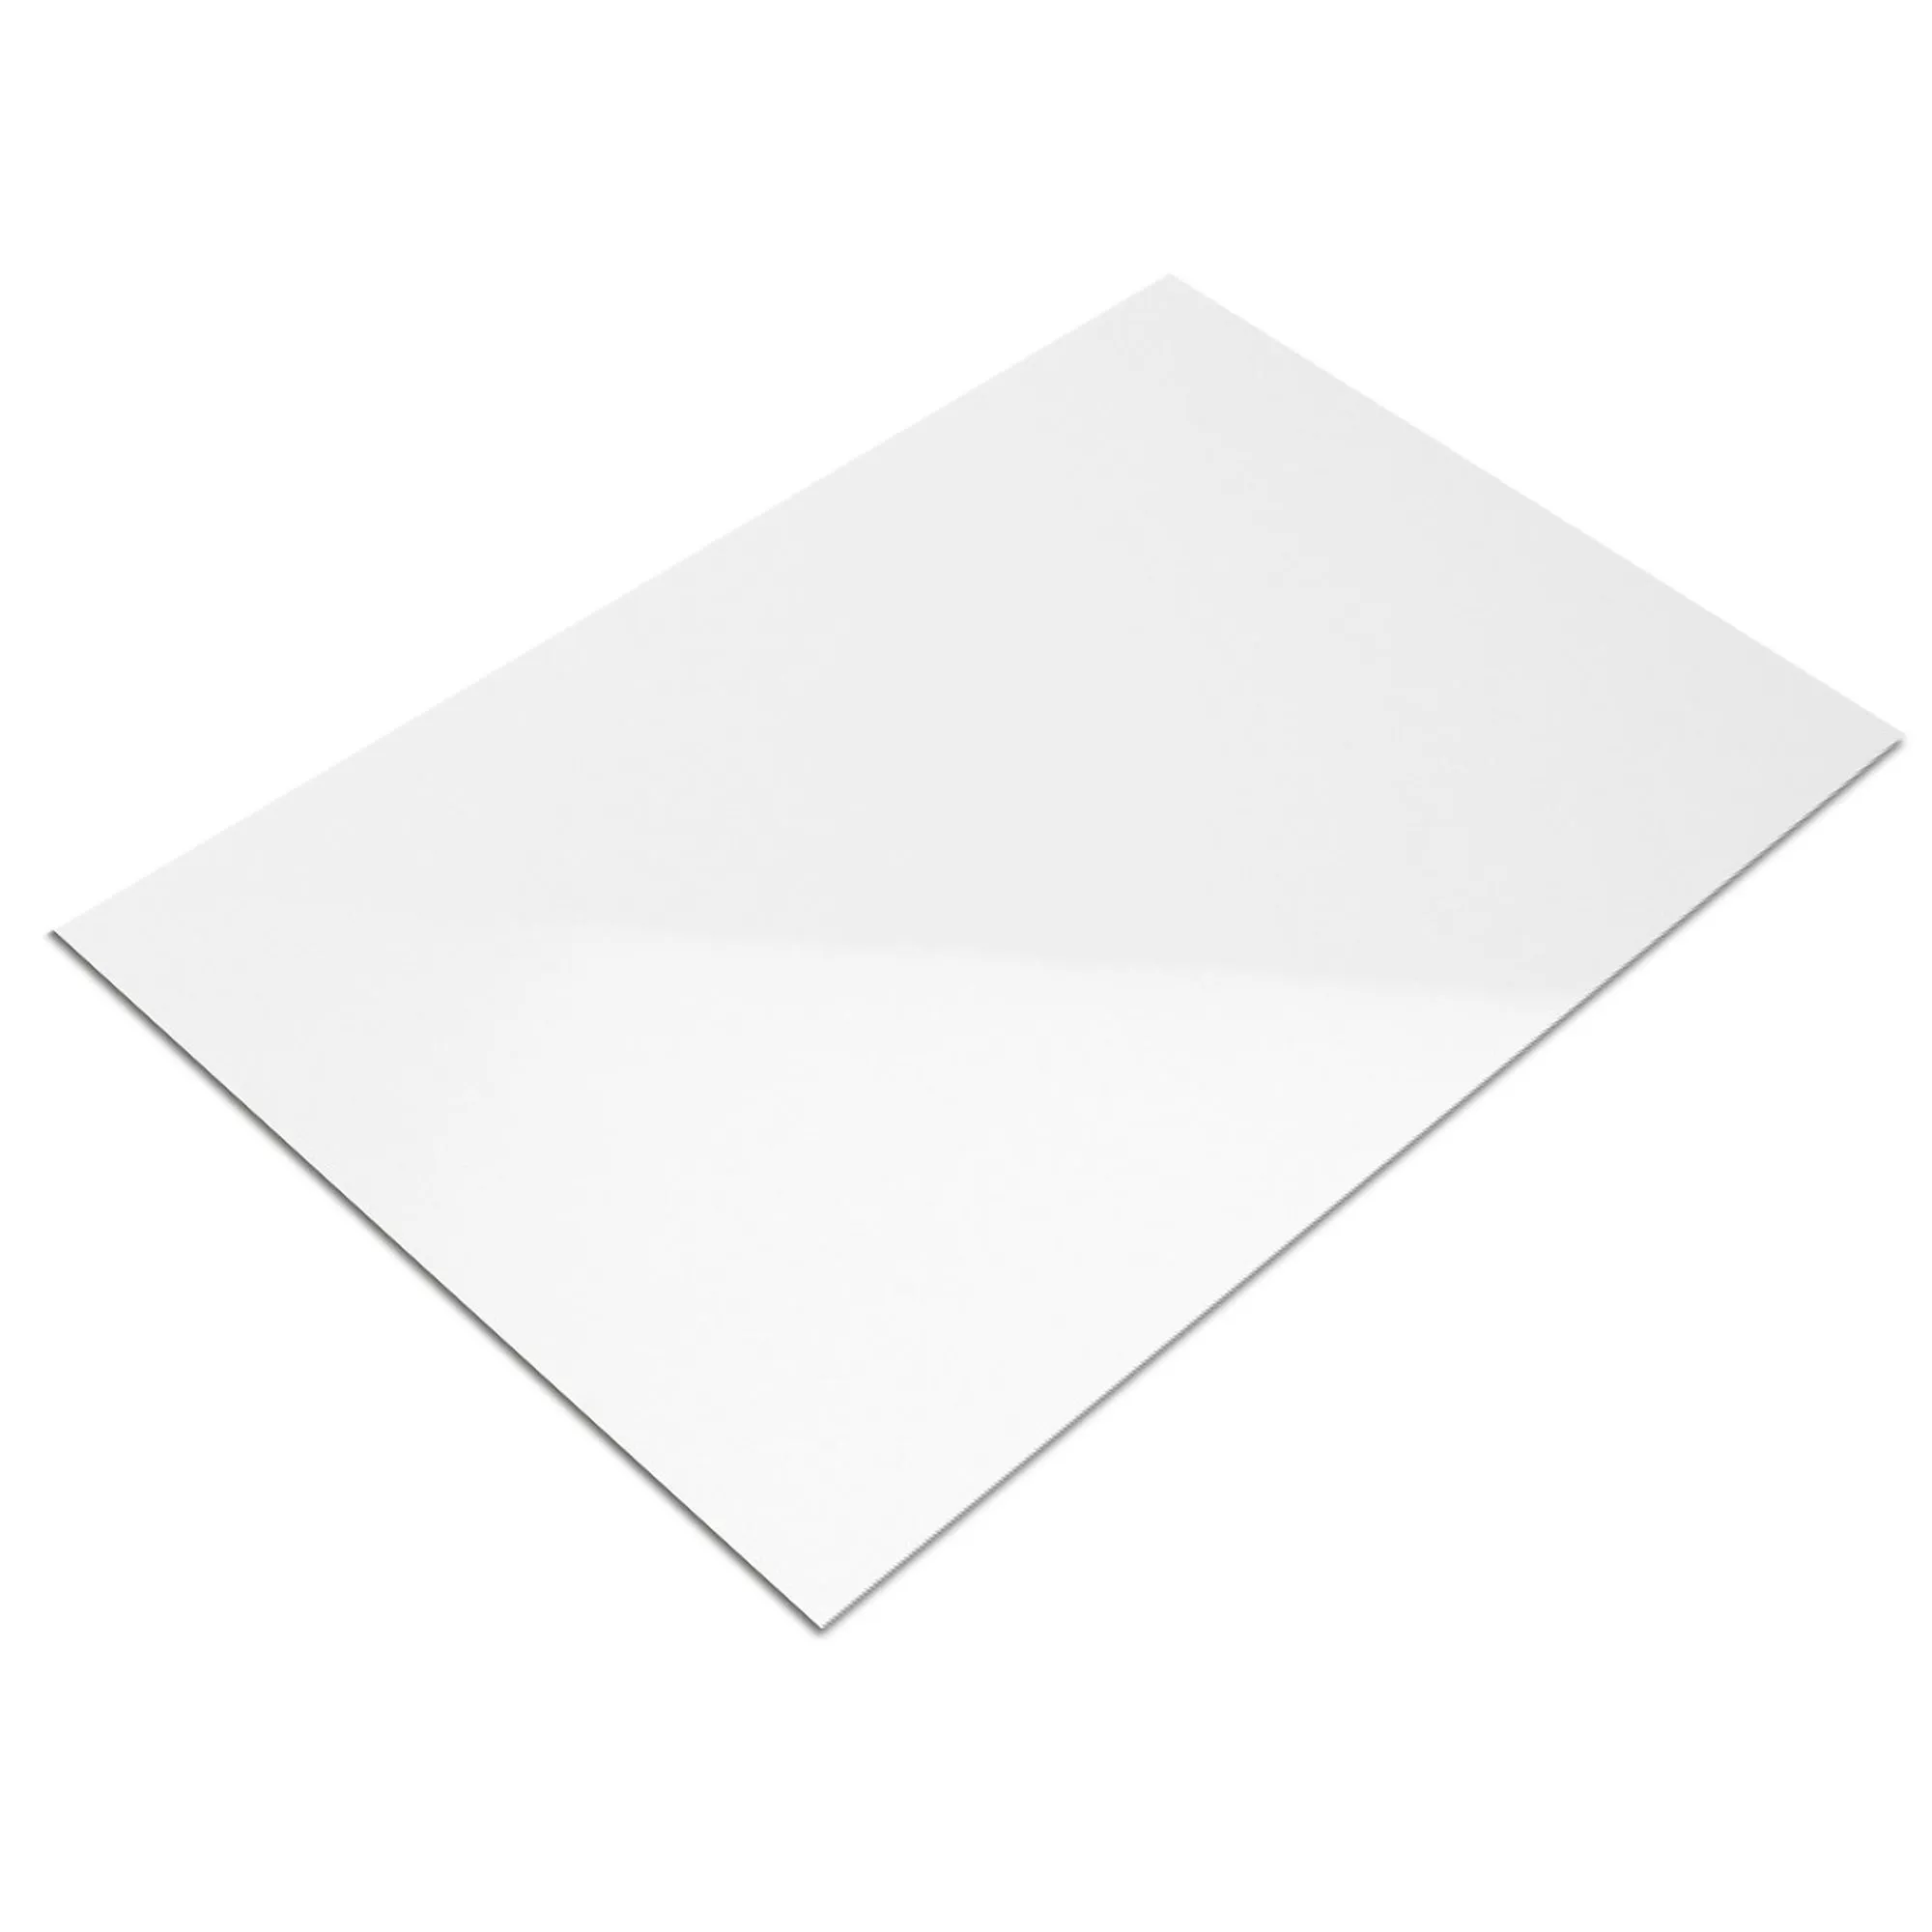 Muestra Revestimiento Fenway Blanco Brillante 20x60cm